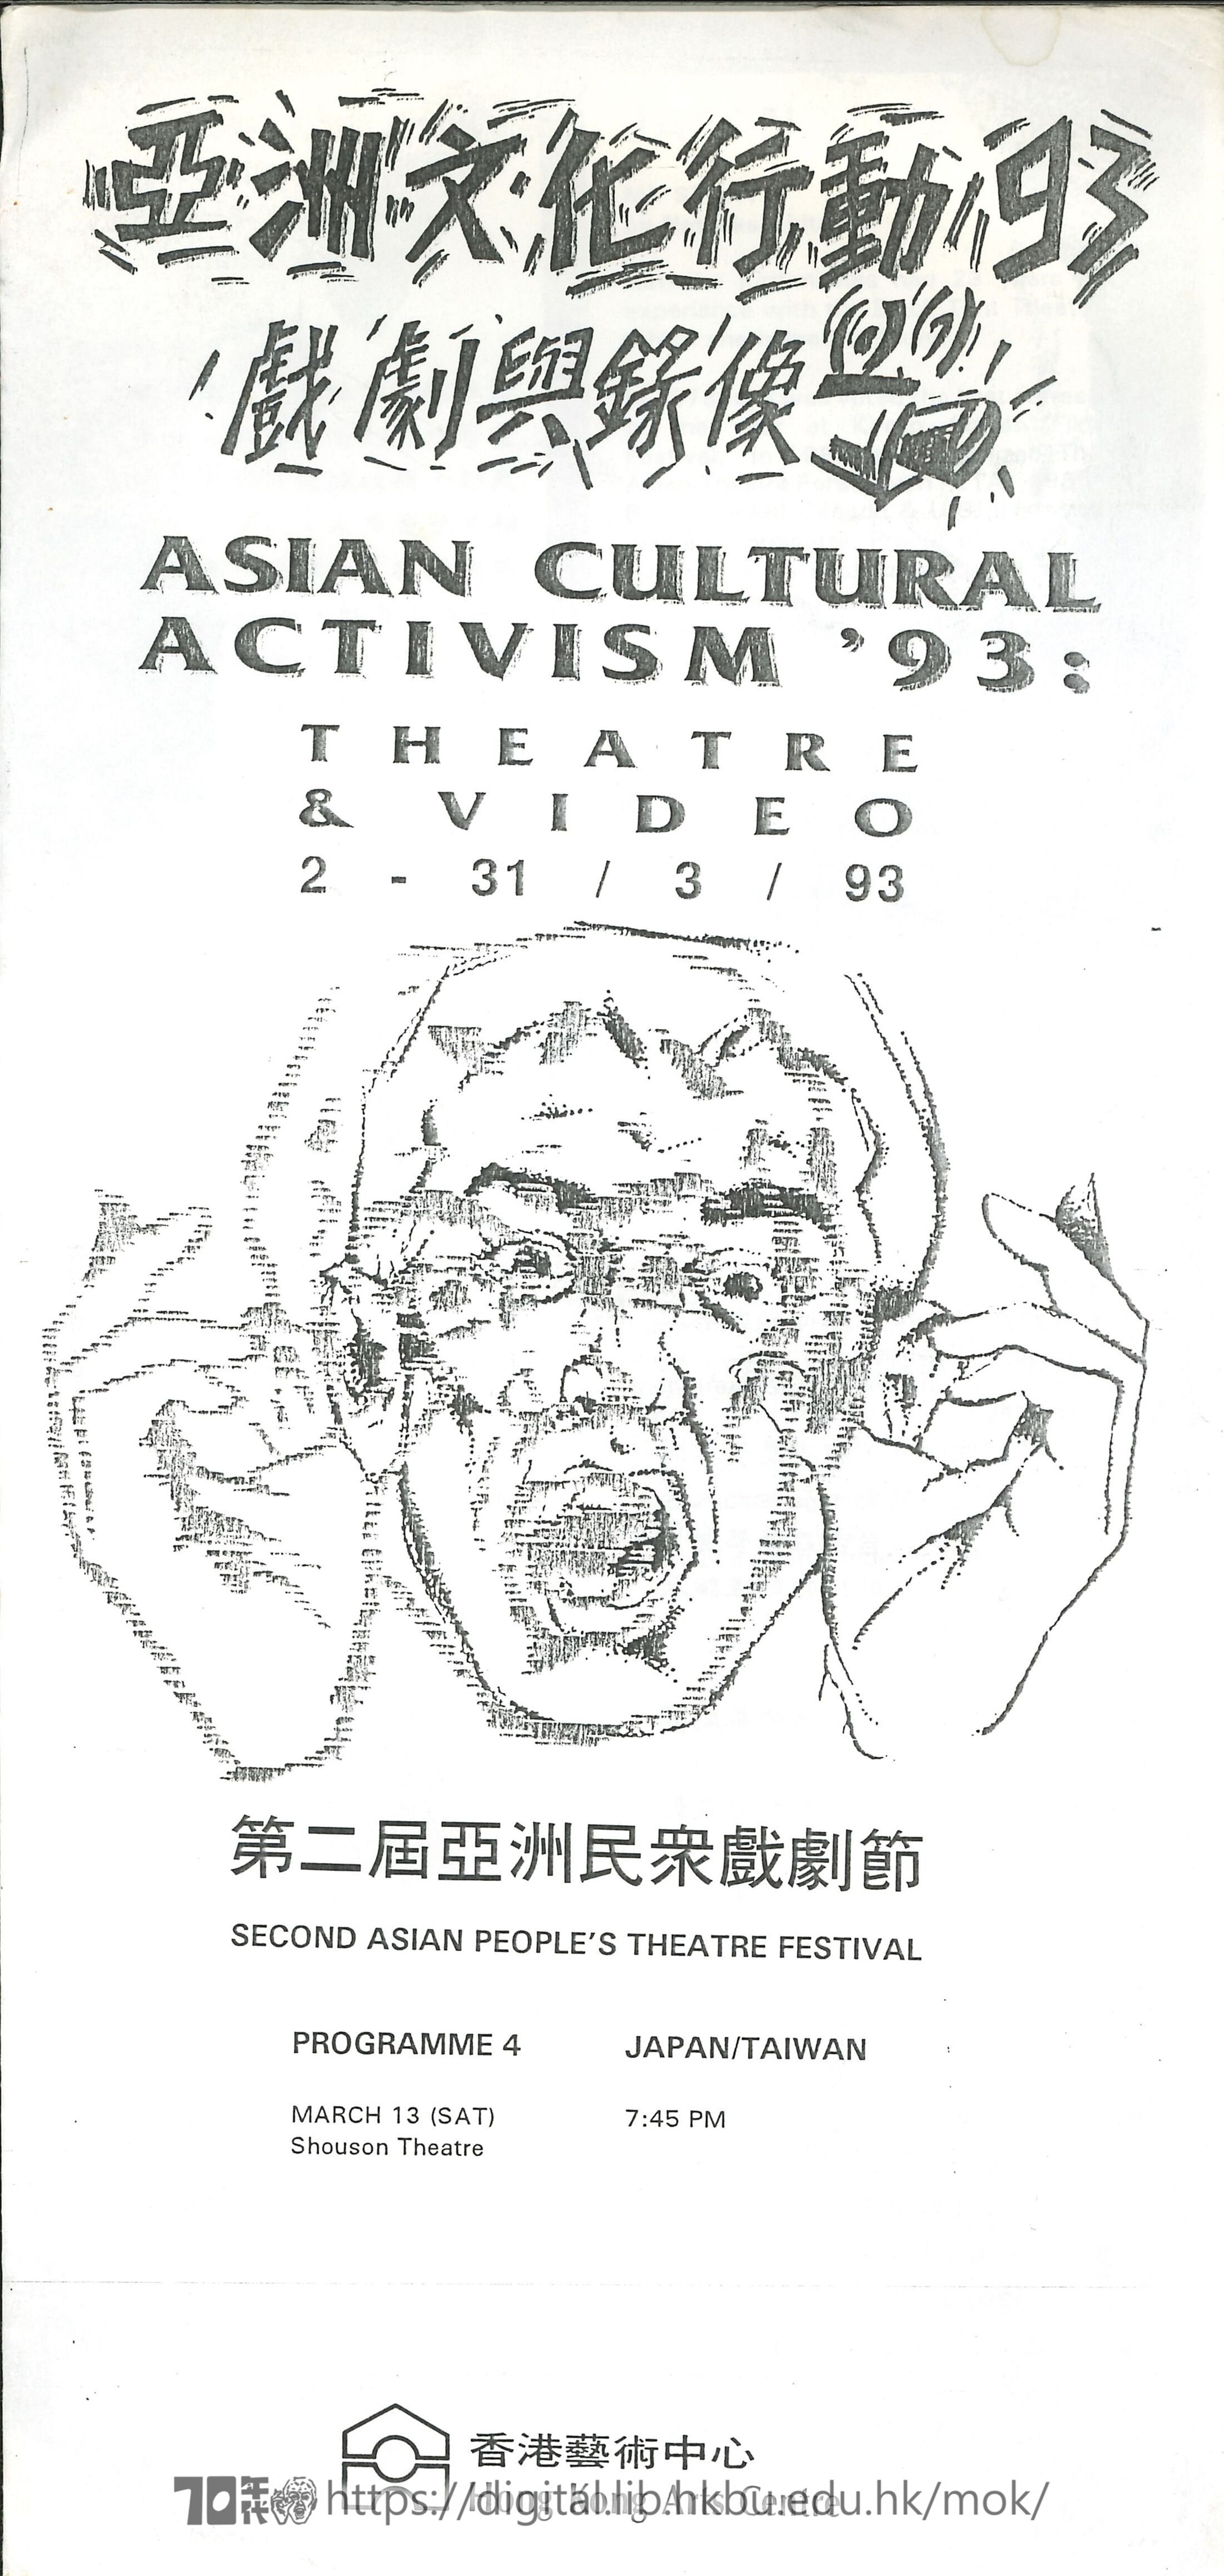 第二屆亞洲民眾戲劇節  亞洲文化行動93 戲劇與錄像 (節目-4）第二届亞洲民衆戲劇節 場刊  